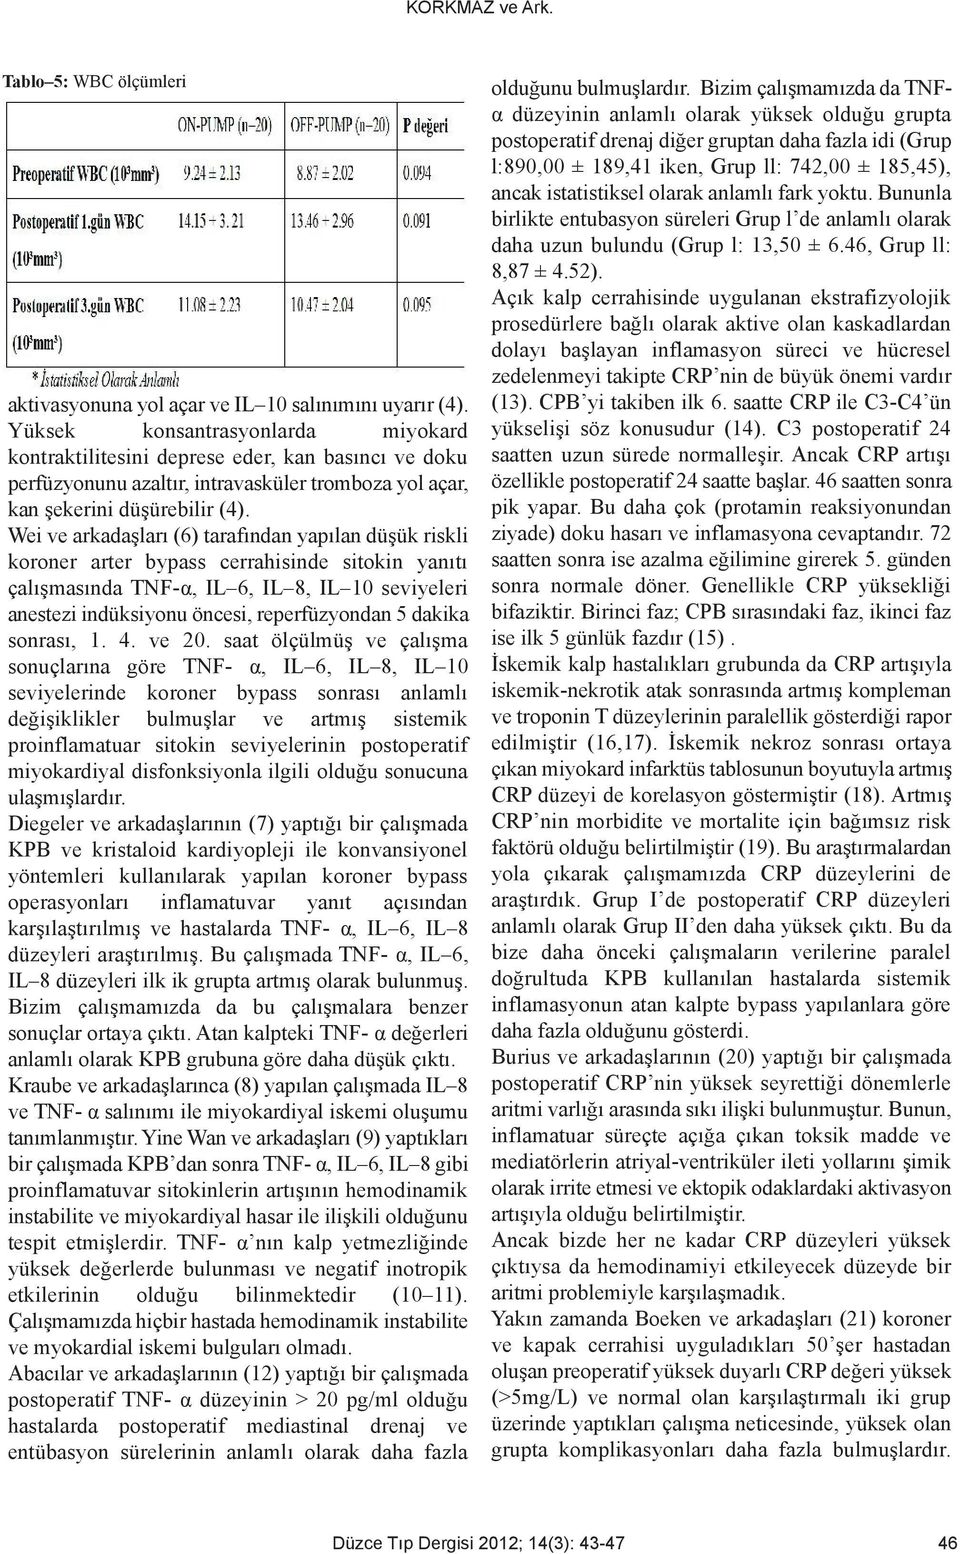 Wei ve arkadaşları (6) tarafından yapılan düşük riskli koroner arter bypass cerrahisinde sitokin yanıtı çalışmasında TNF-α, IL 6, IL 8, IL 0 seviyeleri anestezi indüksiyonu öncesi, reperfüzyondan 5